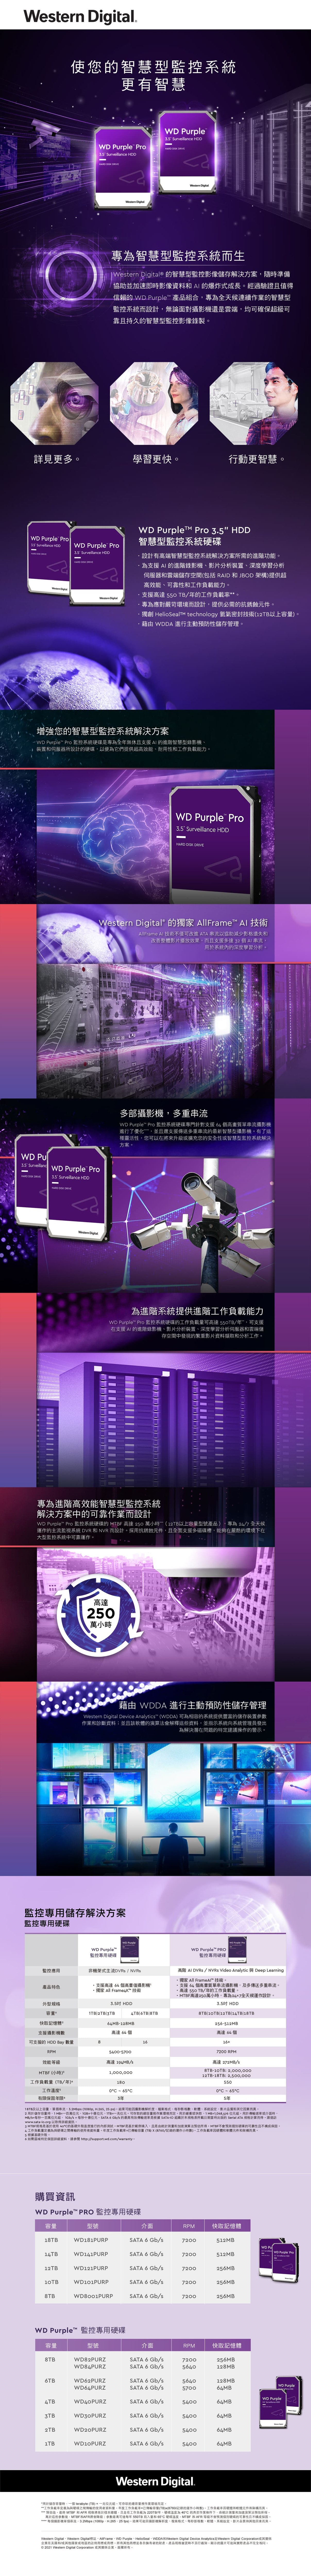 Digital詳見更多 Pro HARD 5大Wetern Digital Surveilanc rple ProHARD DISK DRIVE 5 D Purple Pro 監監控應用外型HARD DISK DRIVE產品特色快取容量攝增強您智慧型監控系統解決方案 Purple Pro 監控系統硬碟是專為全年無休且支援 進階智慧型錄影機、 裝置和伺服器所設計硬碟以便為它們提供超高效能、耐用性和工作負載能力系運作的主流監視統中可靠 運作型監控系規格記憶體6如需區域特定保支援影可支援的 Bay 數量RPM效能等級MTBF (工作負載 量 ( TB年-M使您的智慧型監控系統更有智慧機4TBTB1TB專為進階高效能智慧型監控系統解決方案中的可靠作業而設計於HARD DISK DRIVE容量4TB Purple Pro.5 Surveillance 監控專用儲存解決方案監控專用硬碟數2TB1TBRECRECWestern Digital儲統 Purple Pro.5 Surveillance HDD控系統DVRHARD DISK DRIVEWestern Digital硬碟的和固詳細資料請參閱http//suppo高達25萬小時17=百萬位元/s = 每位元組B=十億位元1TB=秒十億位元8Western Digital 的獨家 AllFrame 技術AllFrame 技術不僅可改進 A 串流以協助減少影格遺失和改善整體影片播放效果,而且支援多達 32 個 串流,用於系統內的深度學習分析。專為智慧型監控系統而生Western Digital® 的智慧型監控影像儲存解決方案,隨時準備協助並加速即時影像資料和 的爆炸式成長。經過驗證且值得信賴的 Purple 產品組合,專為全天候連續作業的智慧型監控系統而設計,無論面對攝影機還是雲端,均可確保超級可靠且持久的智慧型監控影像錄製。1TB 2TB3TBWD Purple監控專用硬碟WD181PURP非機架式主流DVRs/WD141PURP8(18p, H.265, 25 ps。個串流,3.2MbpsWD121PURP支援 個高畫值攝影機高達獨家 All 技術WD101PURPWD82PURZWD84PURZWestern DigitalWD62PURZWD64PURZWDPURZWD30PURZ購買資訊WD Purple PRO 監控專用硬碟容量型號terabyte (TB) = 兆存容量時,一個為進階系統提供進階工作負載能力WD Purple Pro 監控系統硬碟的工作負載量可高達 /年,可支援在支援 的進階錄影機、影片分析裝置、深度學習分析伺服器和雲端儲存空間中發現的繁重影片資料和分析工作。WD81PURPMTBF 高達 250 萬小時(12TB以上容量型號產品)NVR 而設計。採用抗銹蝕元件,且全面支援多磁碟槽,能夠在嚴酷的環境下在吋 HDD64MB-128MBWD Purple 監控專用硬碟型號學習更快。WD PurpleAT HDD藉由 WDDA 進行主動預防性儲存管理Western Digital Device Analytics (WDDA) 可為相容的系統提供豐富的儲存裝置參數作業和診斷資料並且該軟體的演算法會解釋這些資料,並指示系統向系統管理員發出為解決潛在問題的特定建議操作的警示。高達 194MB/s多部攝影機,多重串流WD Purple Pro 監控系統硬碟專門針對支援 64 個高畫質單串流攝影機進行了優化,並且還支援傳送多重串流的最新智慧型攝影機。有了這種靈活性,您可以在將來升級或擴充您的安全性或智慧型監控系統解決方案。高達 64 個5400-5700.rt.wd.com/warranty。1,000,0001800C 65C3年WD Purple Pro HDD智慧型監控系統硬碟 8TB工作溫度有限保固年限。18TB及以上容量,單,。請造訪得。2 用於 儲存 容 量 時MB/s=每秒一百萬www.sata-io.org 以取3 MTBF規格是基於4工作負載量定殼。詳細資 訊40的基礎外使用殼溫度進行的內部測試。MTBF是基於範例加會填入,且是由統計測量和為與硬碟之間傳輸的使用者資料量。年度工作負載率=已傳輸容量(TB錄義X (8760/記)預測個別硬碟的可靠性且不構 成保固。運作小時數)。工作負載率因硬體和軟體元件和架構而異。的根據基礎外設計有高端智慧型監控系統解決方案所需的進階功能。為支援 的進階錄影機、影片分析裝置、深度學習分析伺服器和雲端儲存空間(包括 RD 和 JBOD 架構)提供超高效能、可靠性和工作負載能力。支援高達 TB/年的工作負載率。專為應對嚴苛環境而設計,提供必需的抗銹蝕元件。0獨創 technology 氦氣密封技術(12TB以上容量)藉由 WDDA 進行主動預防性儲存管理。16介面SATASATASATASATASATASATAREDSATASATASATA 6SATASATASATAMB=1,048,576 位元組。用於傳輸速率或介面時,用於緩衝或快取,16 Gb/s 的最高有效傳輸速率是根據 SATA- 組織於本規格表所載日期當時出版的 Serial ATA 規格計算而得。SATA6 Gb/s介面SATA6 Gb/s6 Gb/s6WD Purple3.5" Surveillance HDDHARD DISK DRIVE6Gb/s6 Gb/s6 Gb/s6結果可能因攝影機解析度、檔案格式、每秒影格數、軟體、系統設定、影片品質和其它因素而異。一兆位元。可存取的總容量視作業環境而定。Gb/s6Gb/s6 Gb/s62Western DigitalGb/sWD Purple Pro3.5" Surveillance HDDHARD DISK DRIVE) Gb/s00Gb/s6 Gb/sMTBF速度WD Purple PRO監控專用硬碟AI / NVRs Video Analytic Deep Learning-獨家All FrameA™ 技術。支援 64 個高畫質單串流攝影機,及多傳送多重串流。·高達550TB/年的工作負載量。演算法預RPM72007200高達250萬小時,專為24×7全天候運作設計。3.5吋 HDD8TB12TB14B18B256-512MB高達 64 個720072007200RPM*72005640行動更智慧。5640570054005400540054003專為 24/7 全天候WD Purple ProHD估所得。高達 272MB/s8TB-10TB: 2,000,00012TB-18TB: 2,500,000M7200 RPMTBF不5500C 65C5年快取記憶體512MB512MB256MB256MB256MB快取記憶體256MB128MB128MB64MB64MB64MB64MB64MBWestern Digital.*用料量。年度率=位元組。可存 取的總容量視作業環境而定。*工作負載率定義為與 硬 碟 之間傳輸的使用者資工 作 負 載 已傳輸容量(T B )(8760/記錄的運作小時數 )。工 作負載率 因硬體和軟體元件和架構而異。*** 預估值。最終 MTBF 和 AFR 規 格 將 基於 樣 本 總 體 , 且是/年、 硬碟溫 度 40C 的為 典 型作業條件下 ,由統 計測 量和加速演算法預 估 所得。高於這些參數後,MTB F和AFR將會降級;參數最高可達和 AFR 等 會預 別硬碟的 可 靠 性 且 不 構 成 保固。 每個攝影機單個串流,3.2Mbps (1080p,H.265,25 fps)。結果可能因攝影機解析度、檔案格式、每秒影格數、軟體片品質和其他因素而異。在工作22為0TB負載550TB 寫入量每年65°C 硬和碟溫。MTBF級不測個、系統設定、影WD Pu3.5 WD Purple ProWesternDigitalWestern Digital AllFrame WD Purple HelioSeal WDDAWestern Digital Device Analytics Western Digital Corporation企業在美 國和/或其他國家或地區的註冊商標或商標。所有其他商 標是各自擁有 者的財產。產品規格變更時不另行 通知。顯示 的圖片可 能與實際產品不完全相同。© 2021 Western Digital Corporation 或 其 關 係 企 業 。 版 權 所 有。15 Surveillance HDD1WD Purple3.5 Surveillance HDDWD Purple